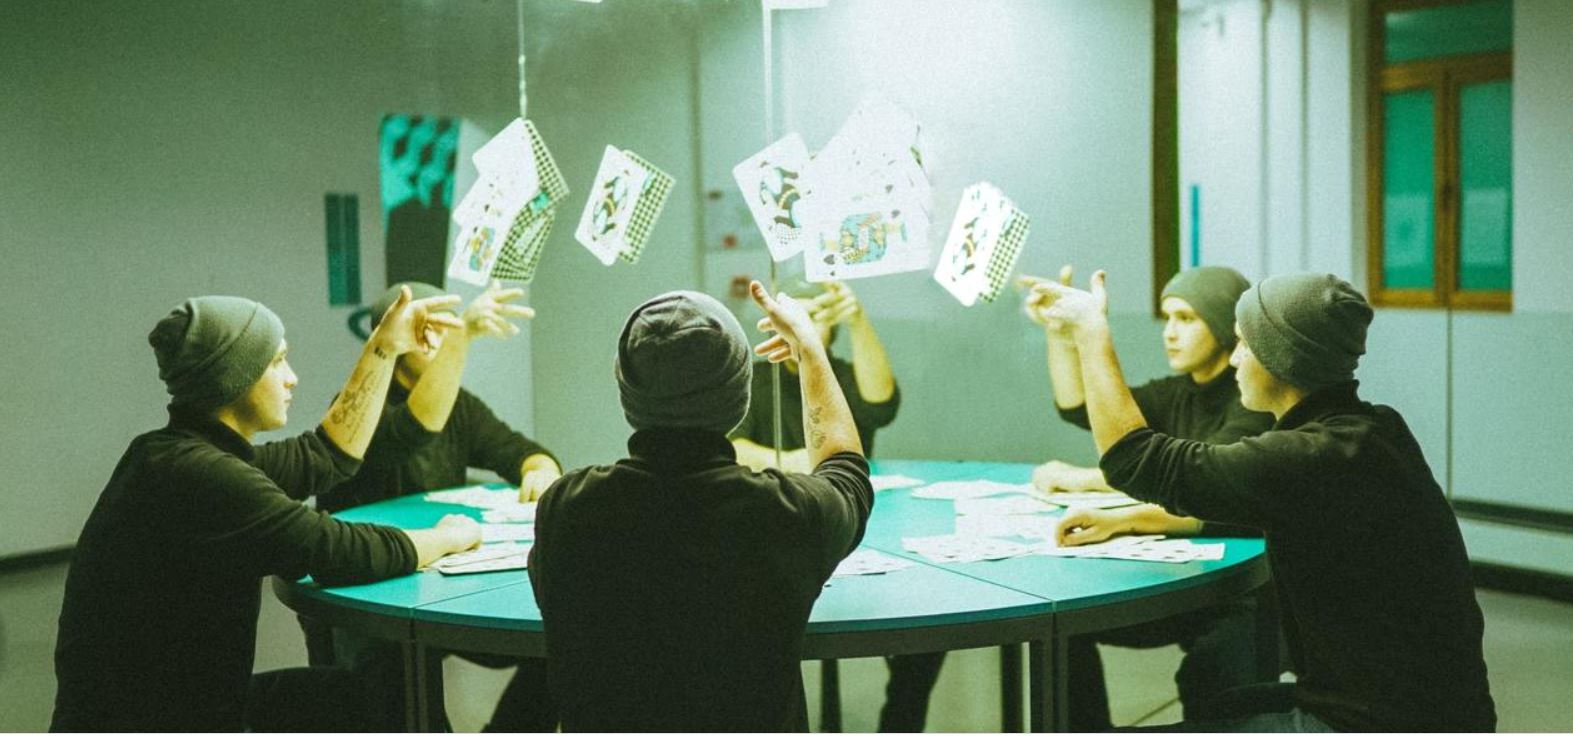 Cultura pop | O poker nos games, no cinema e na história